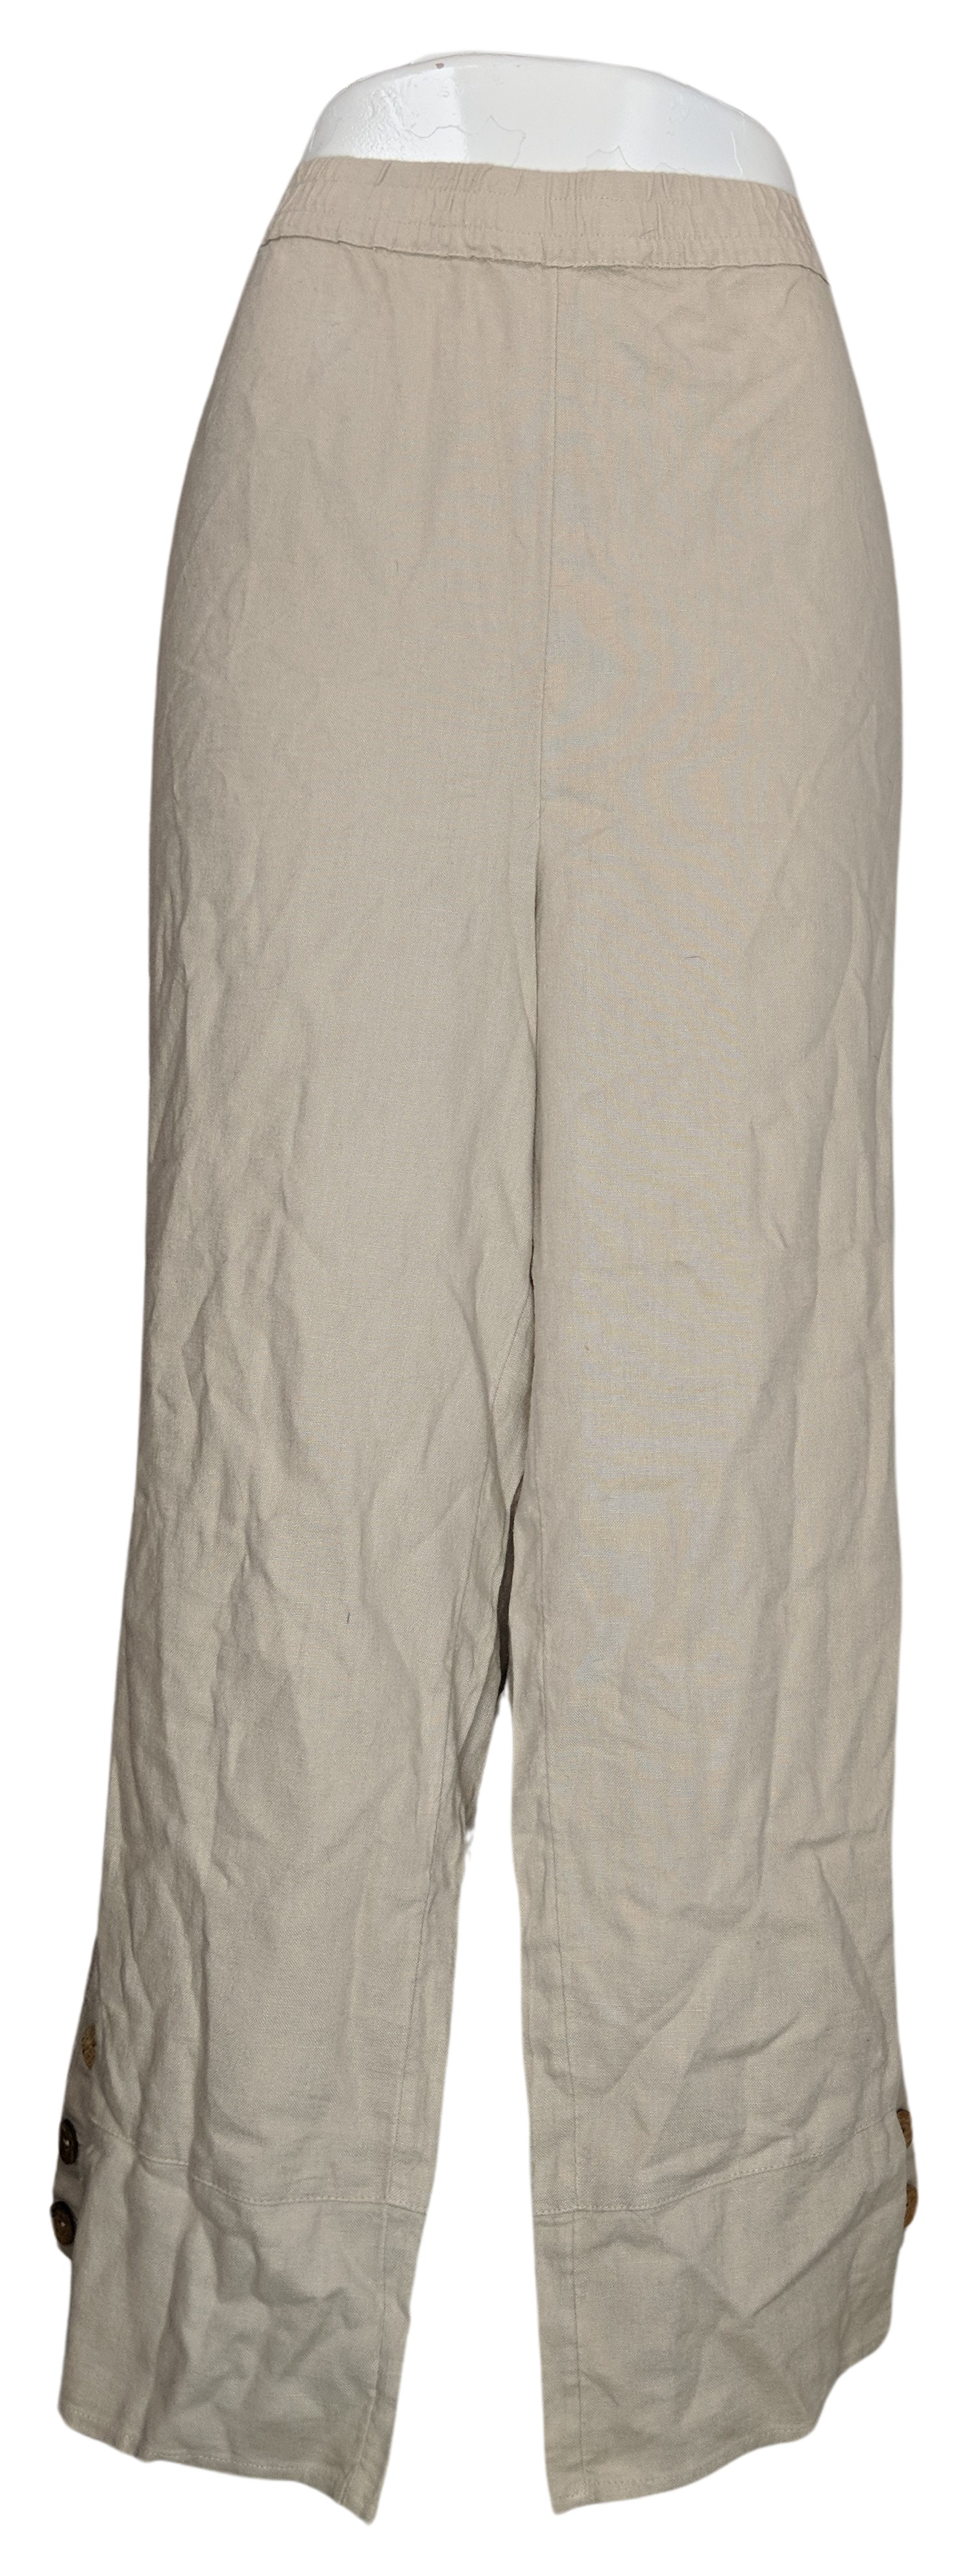 Denim & Co. Naturals Petite Linen Blend Side Women's Pants 2XP Beige